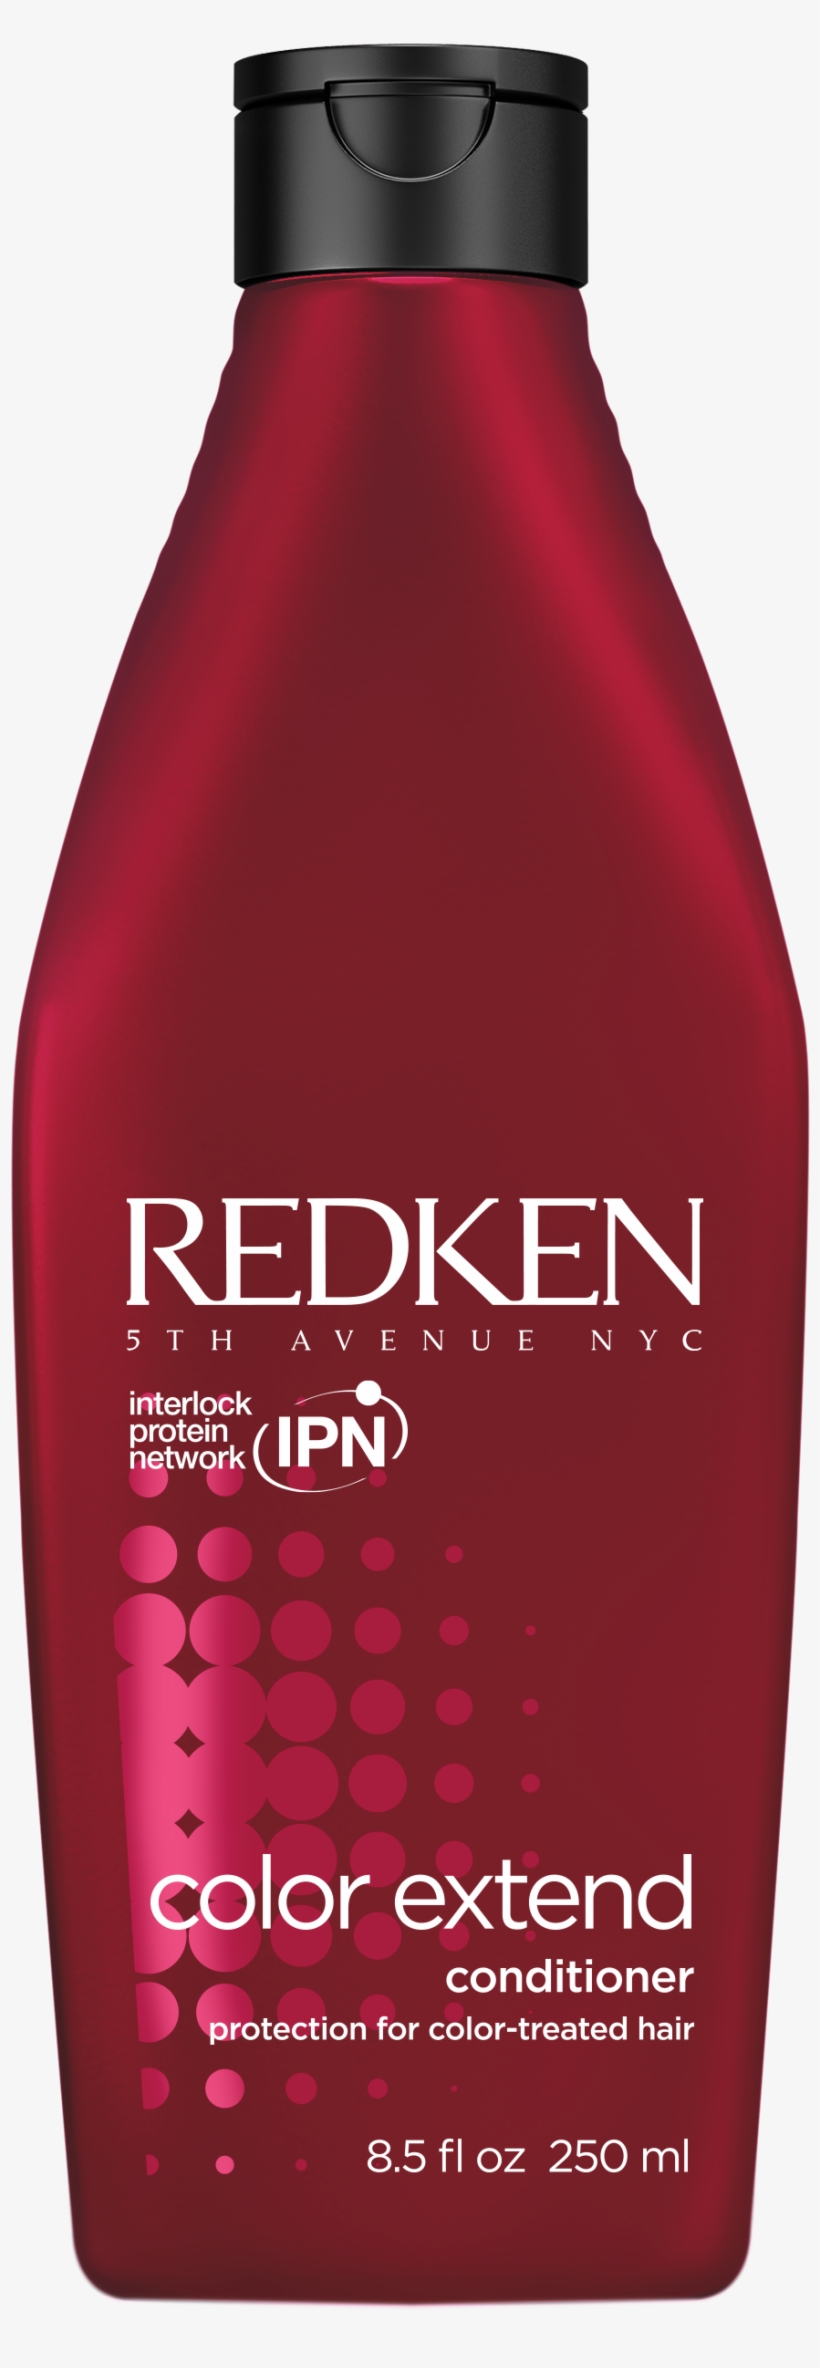 Blonde Hair Model - Redken Shampoo, transparent png #1566577